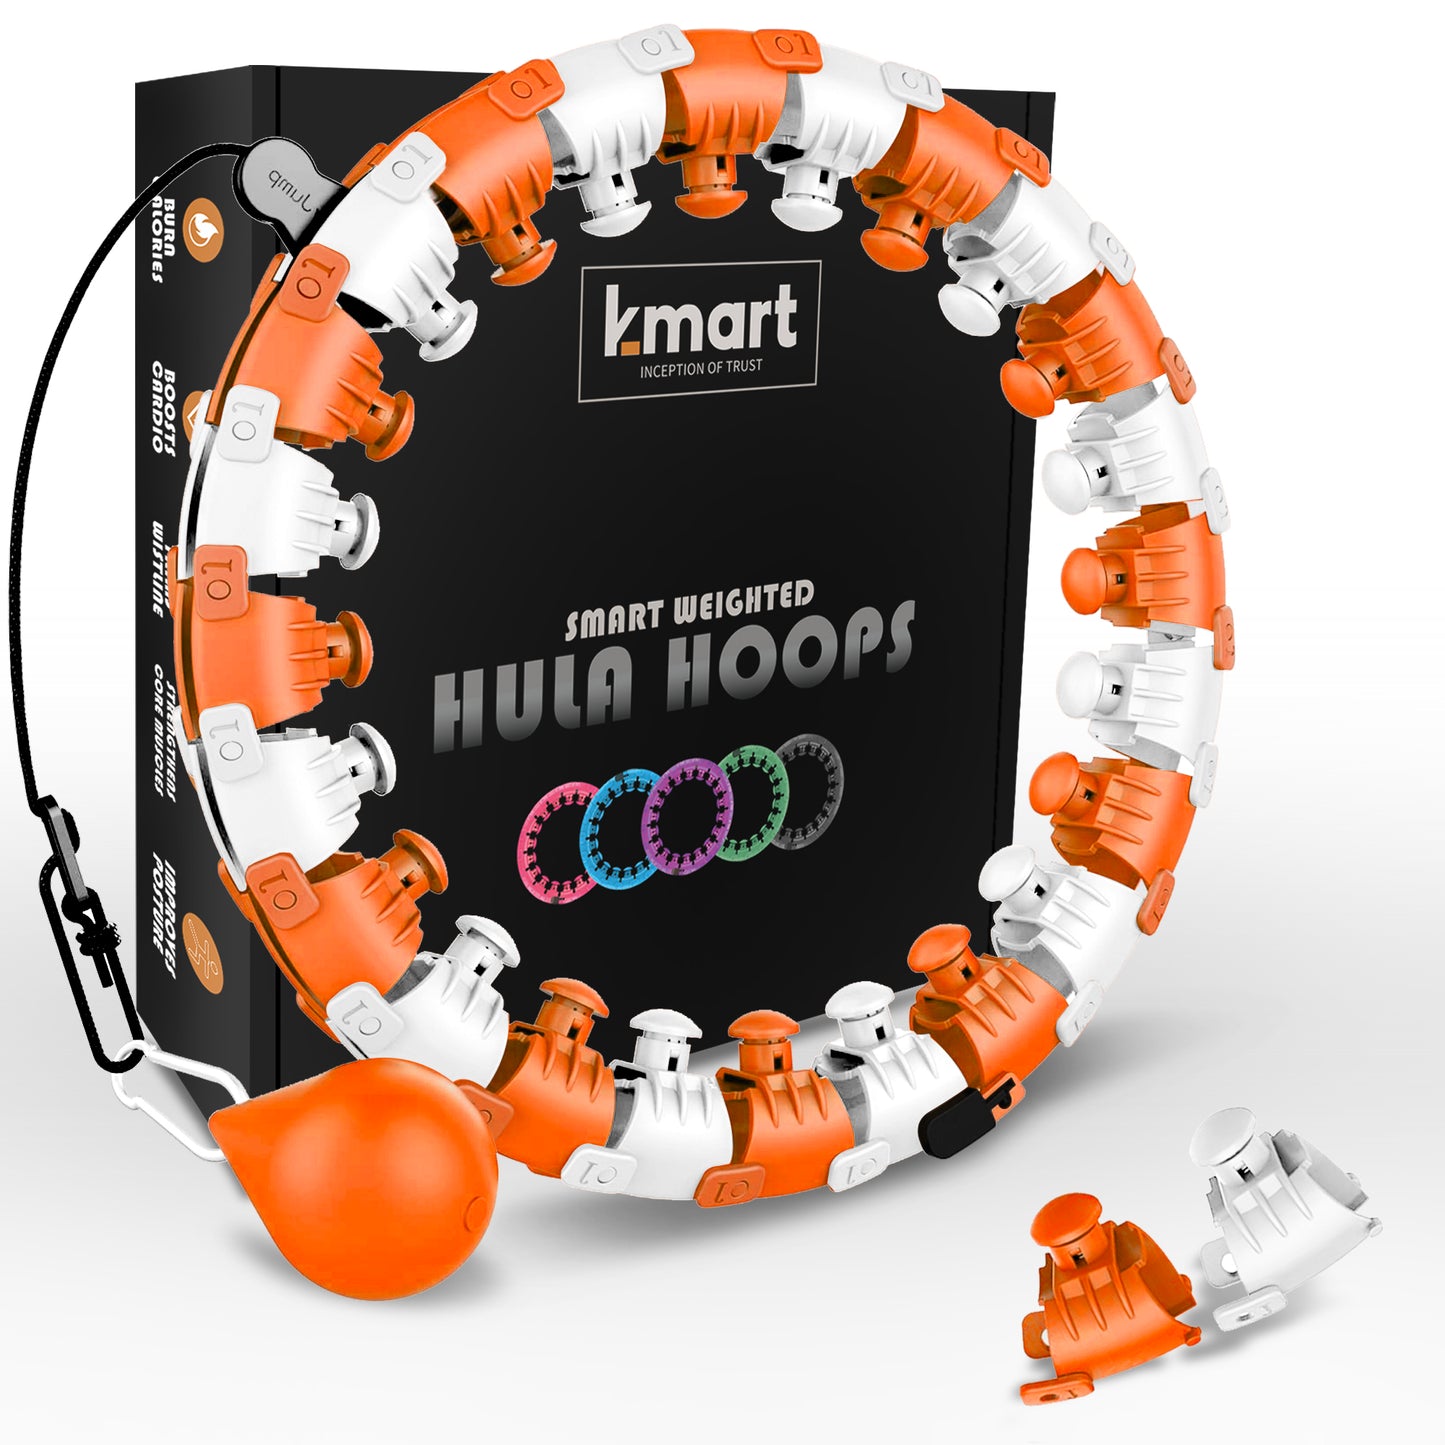 K-mart Smart Hula Hoops